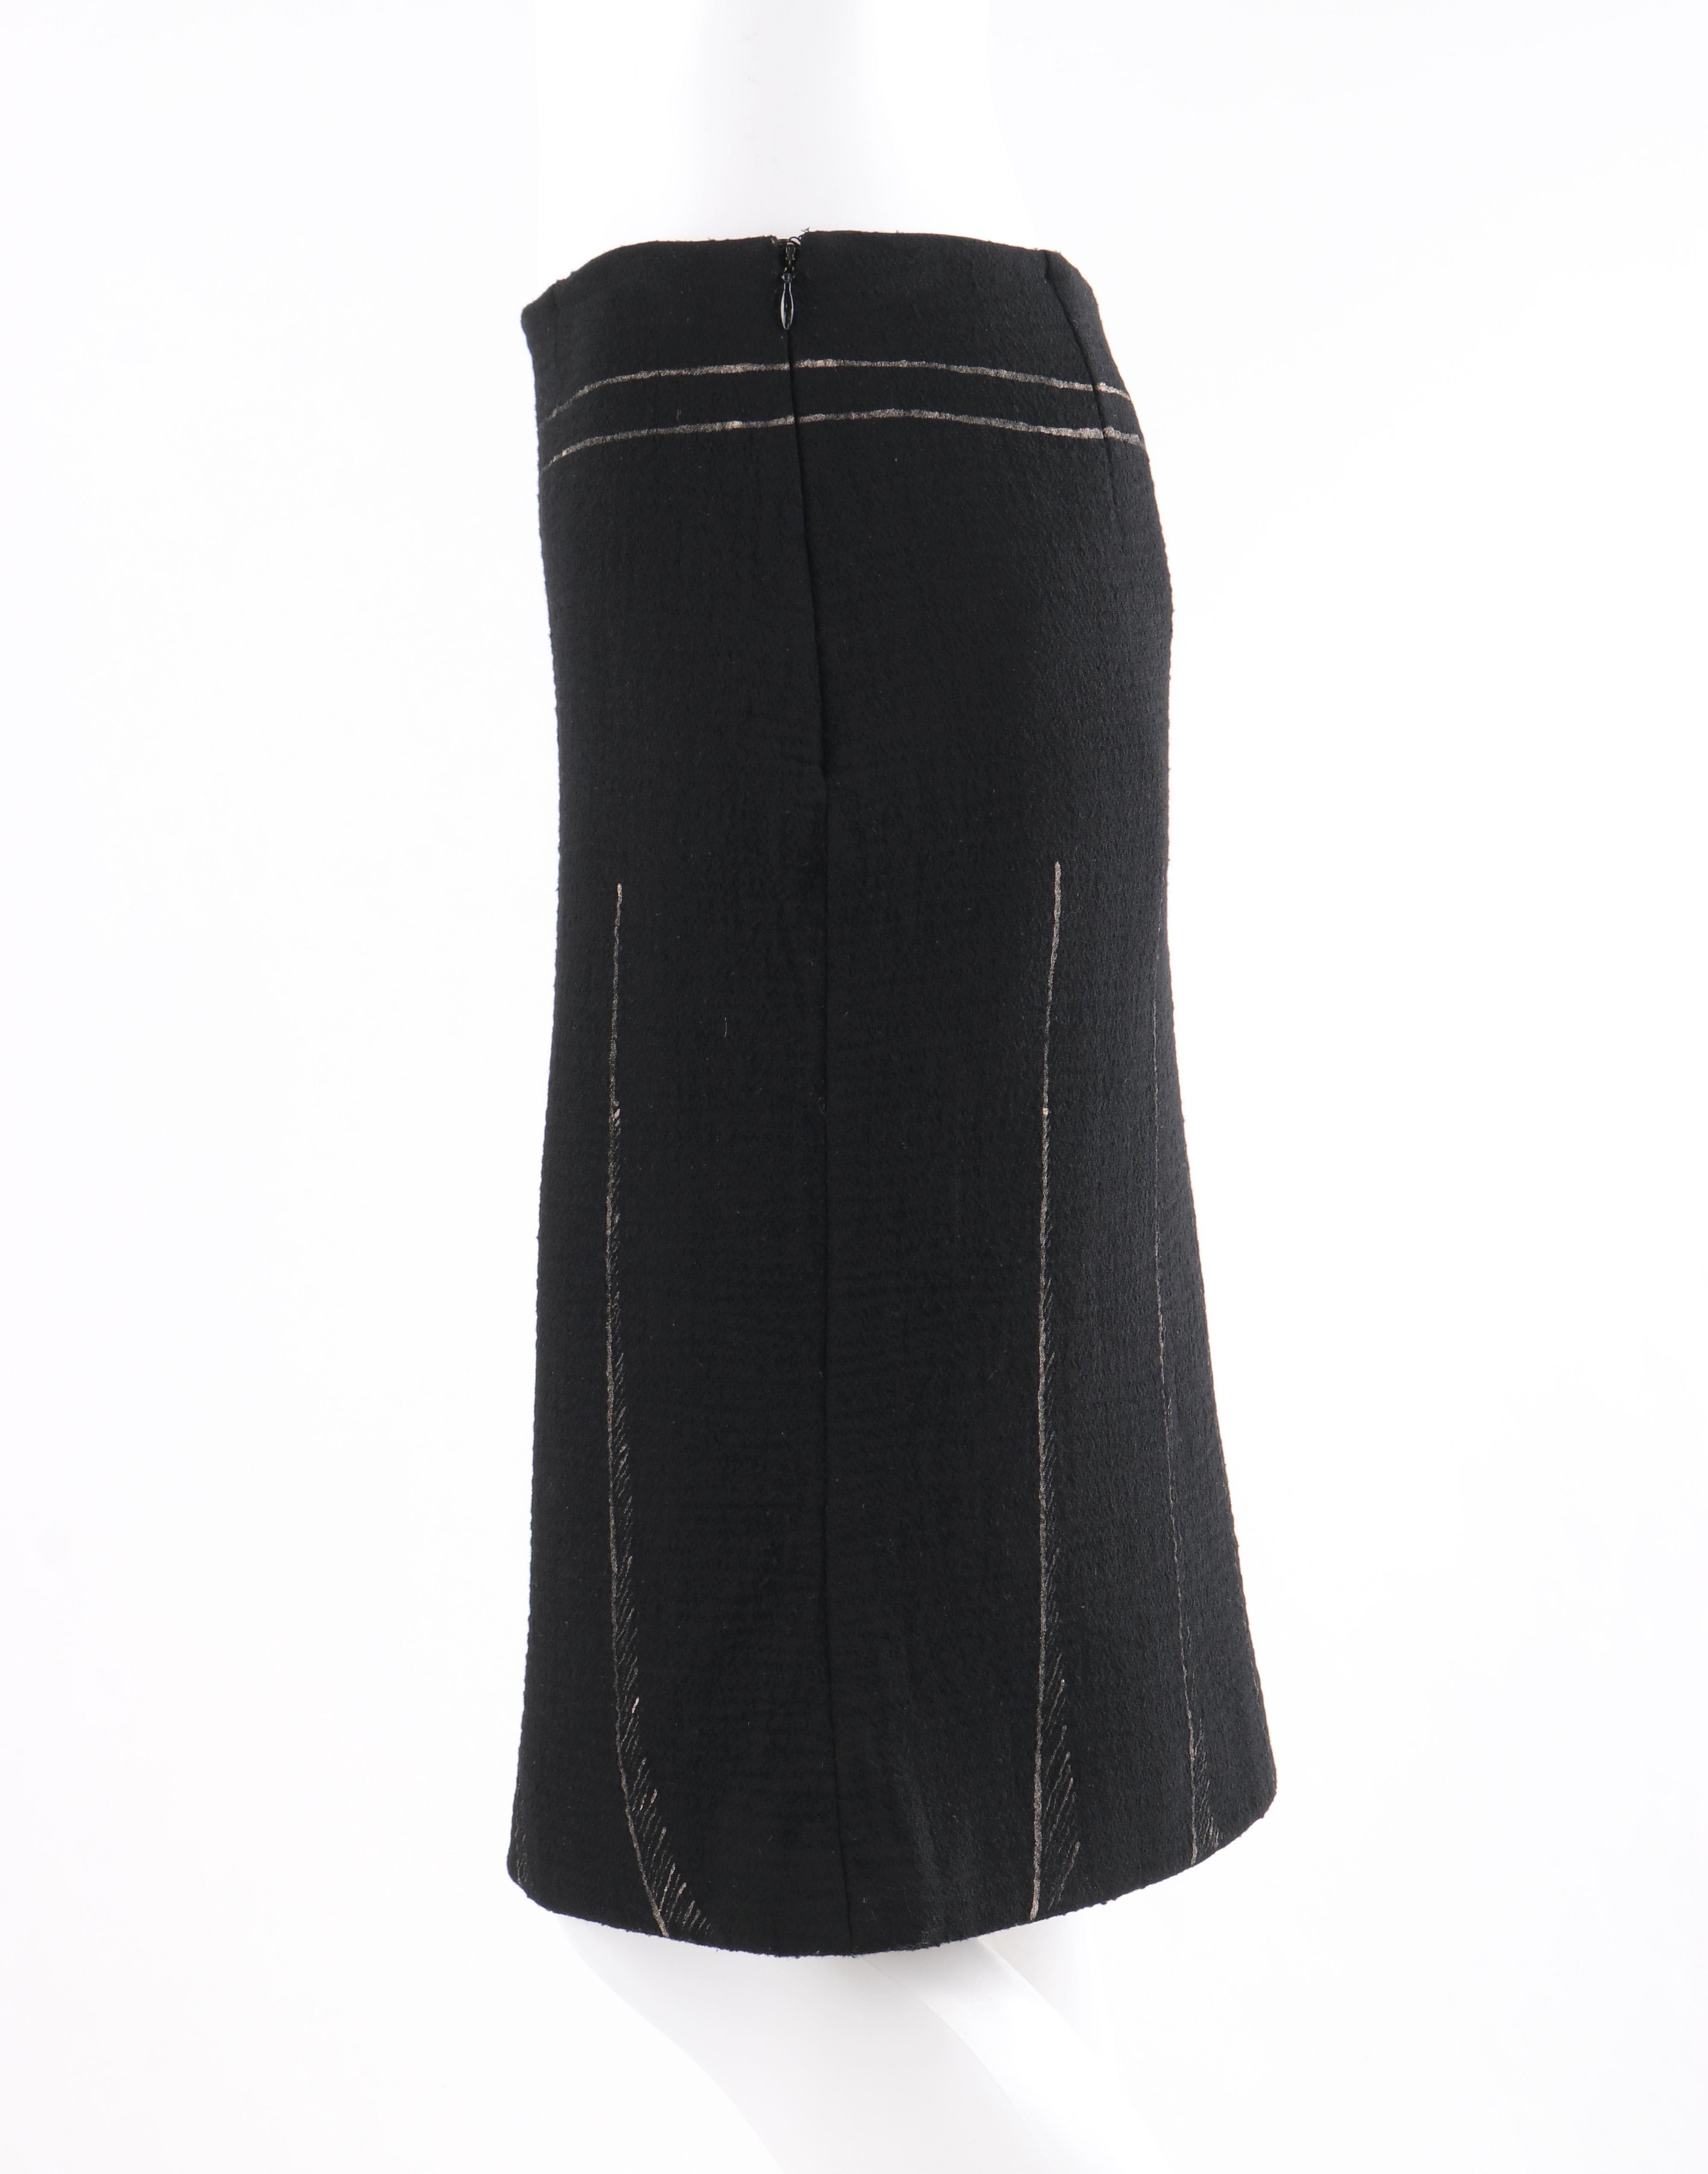 MOSCHINO c. 1990’s Trompe L’oeil Black Metallic Belt Pleated Print Sheath Skirt 1